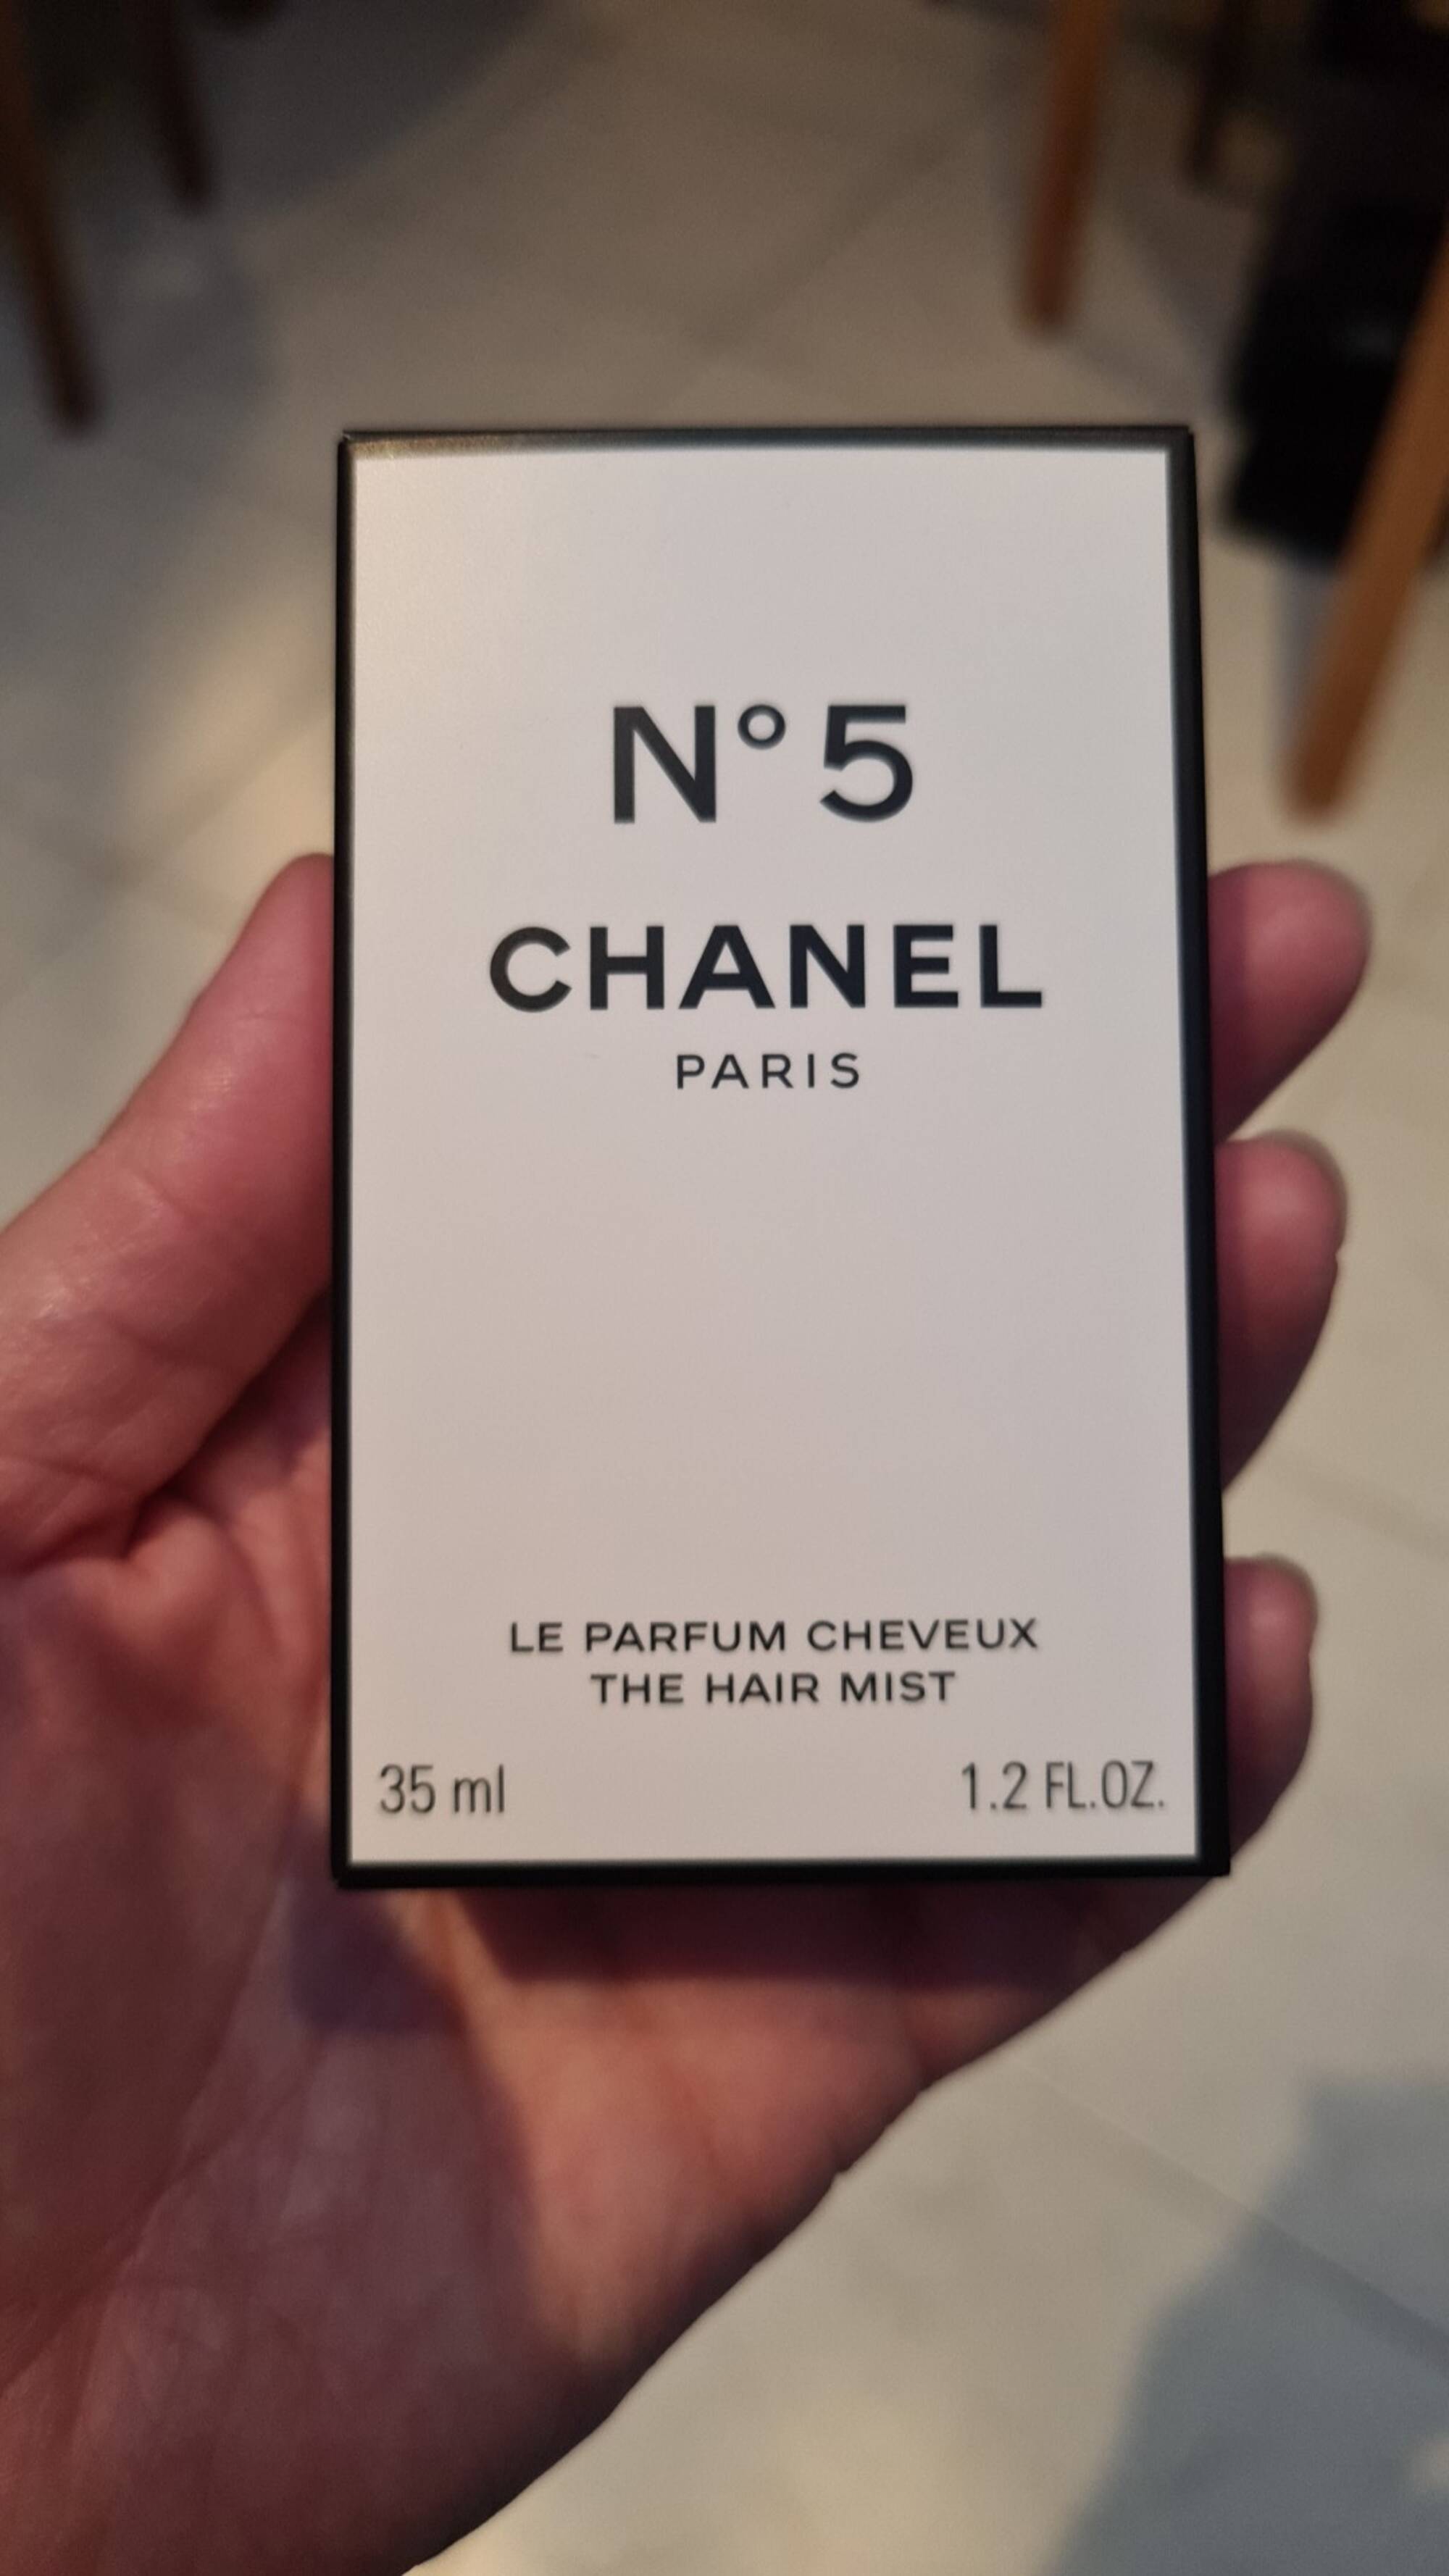 CHANEL - N° 5 - Le parfum cheveux 